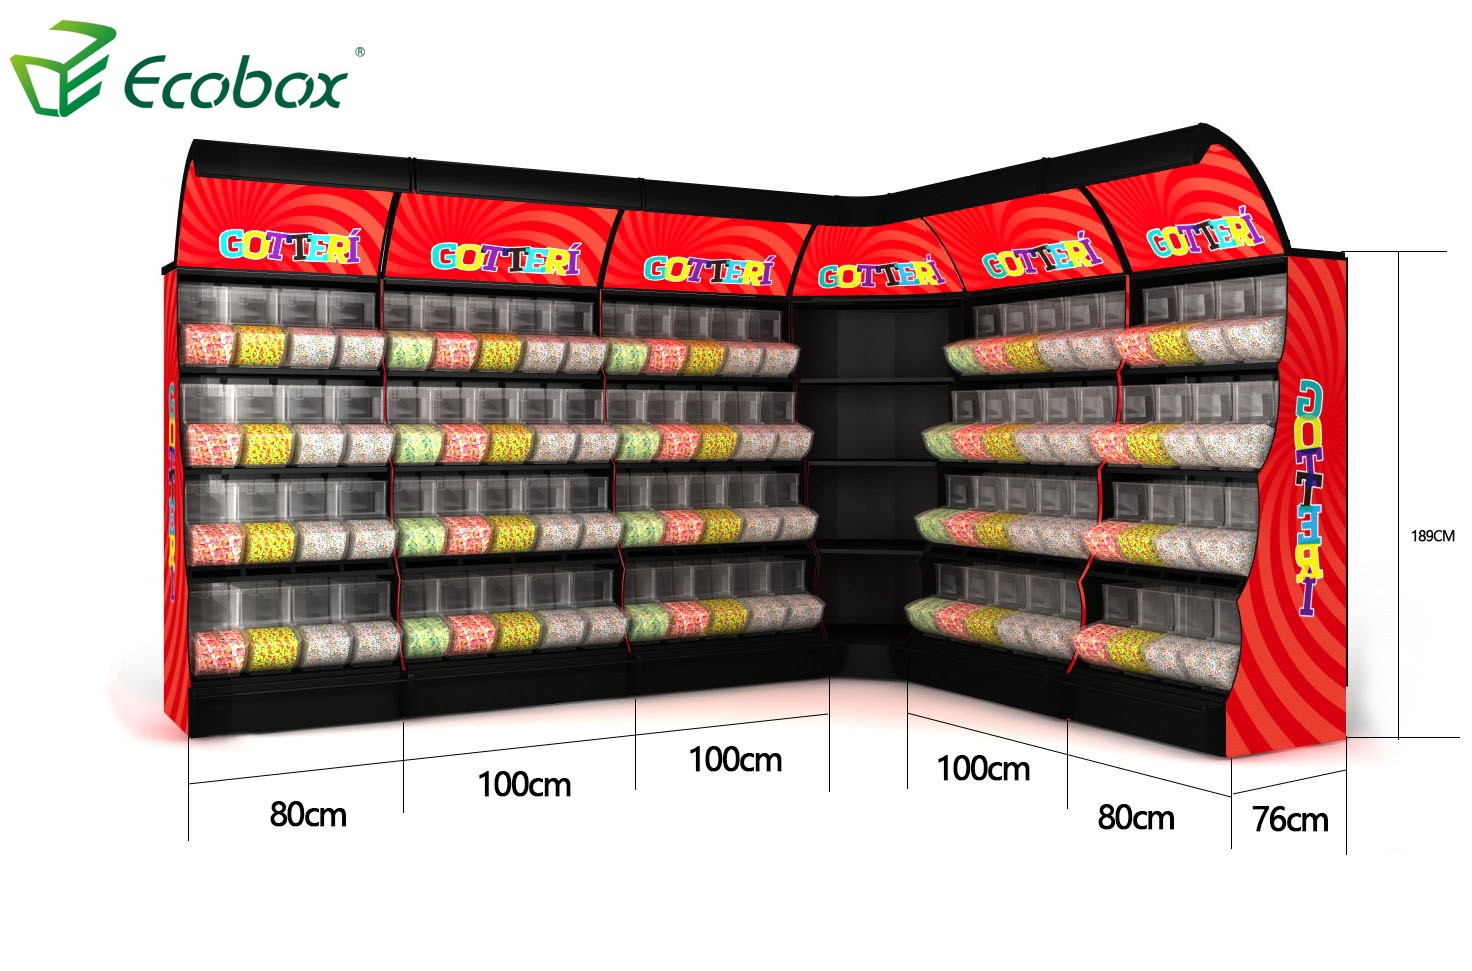 Ecobox TG-06101A Metall-Süßigkeitenständer-Anzeigen-Regal-Rack mit SCOOP-Bins Schwarze Farbe